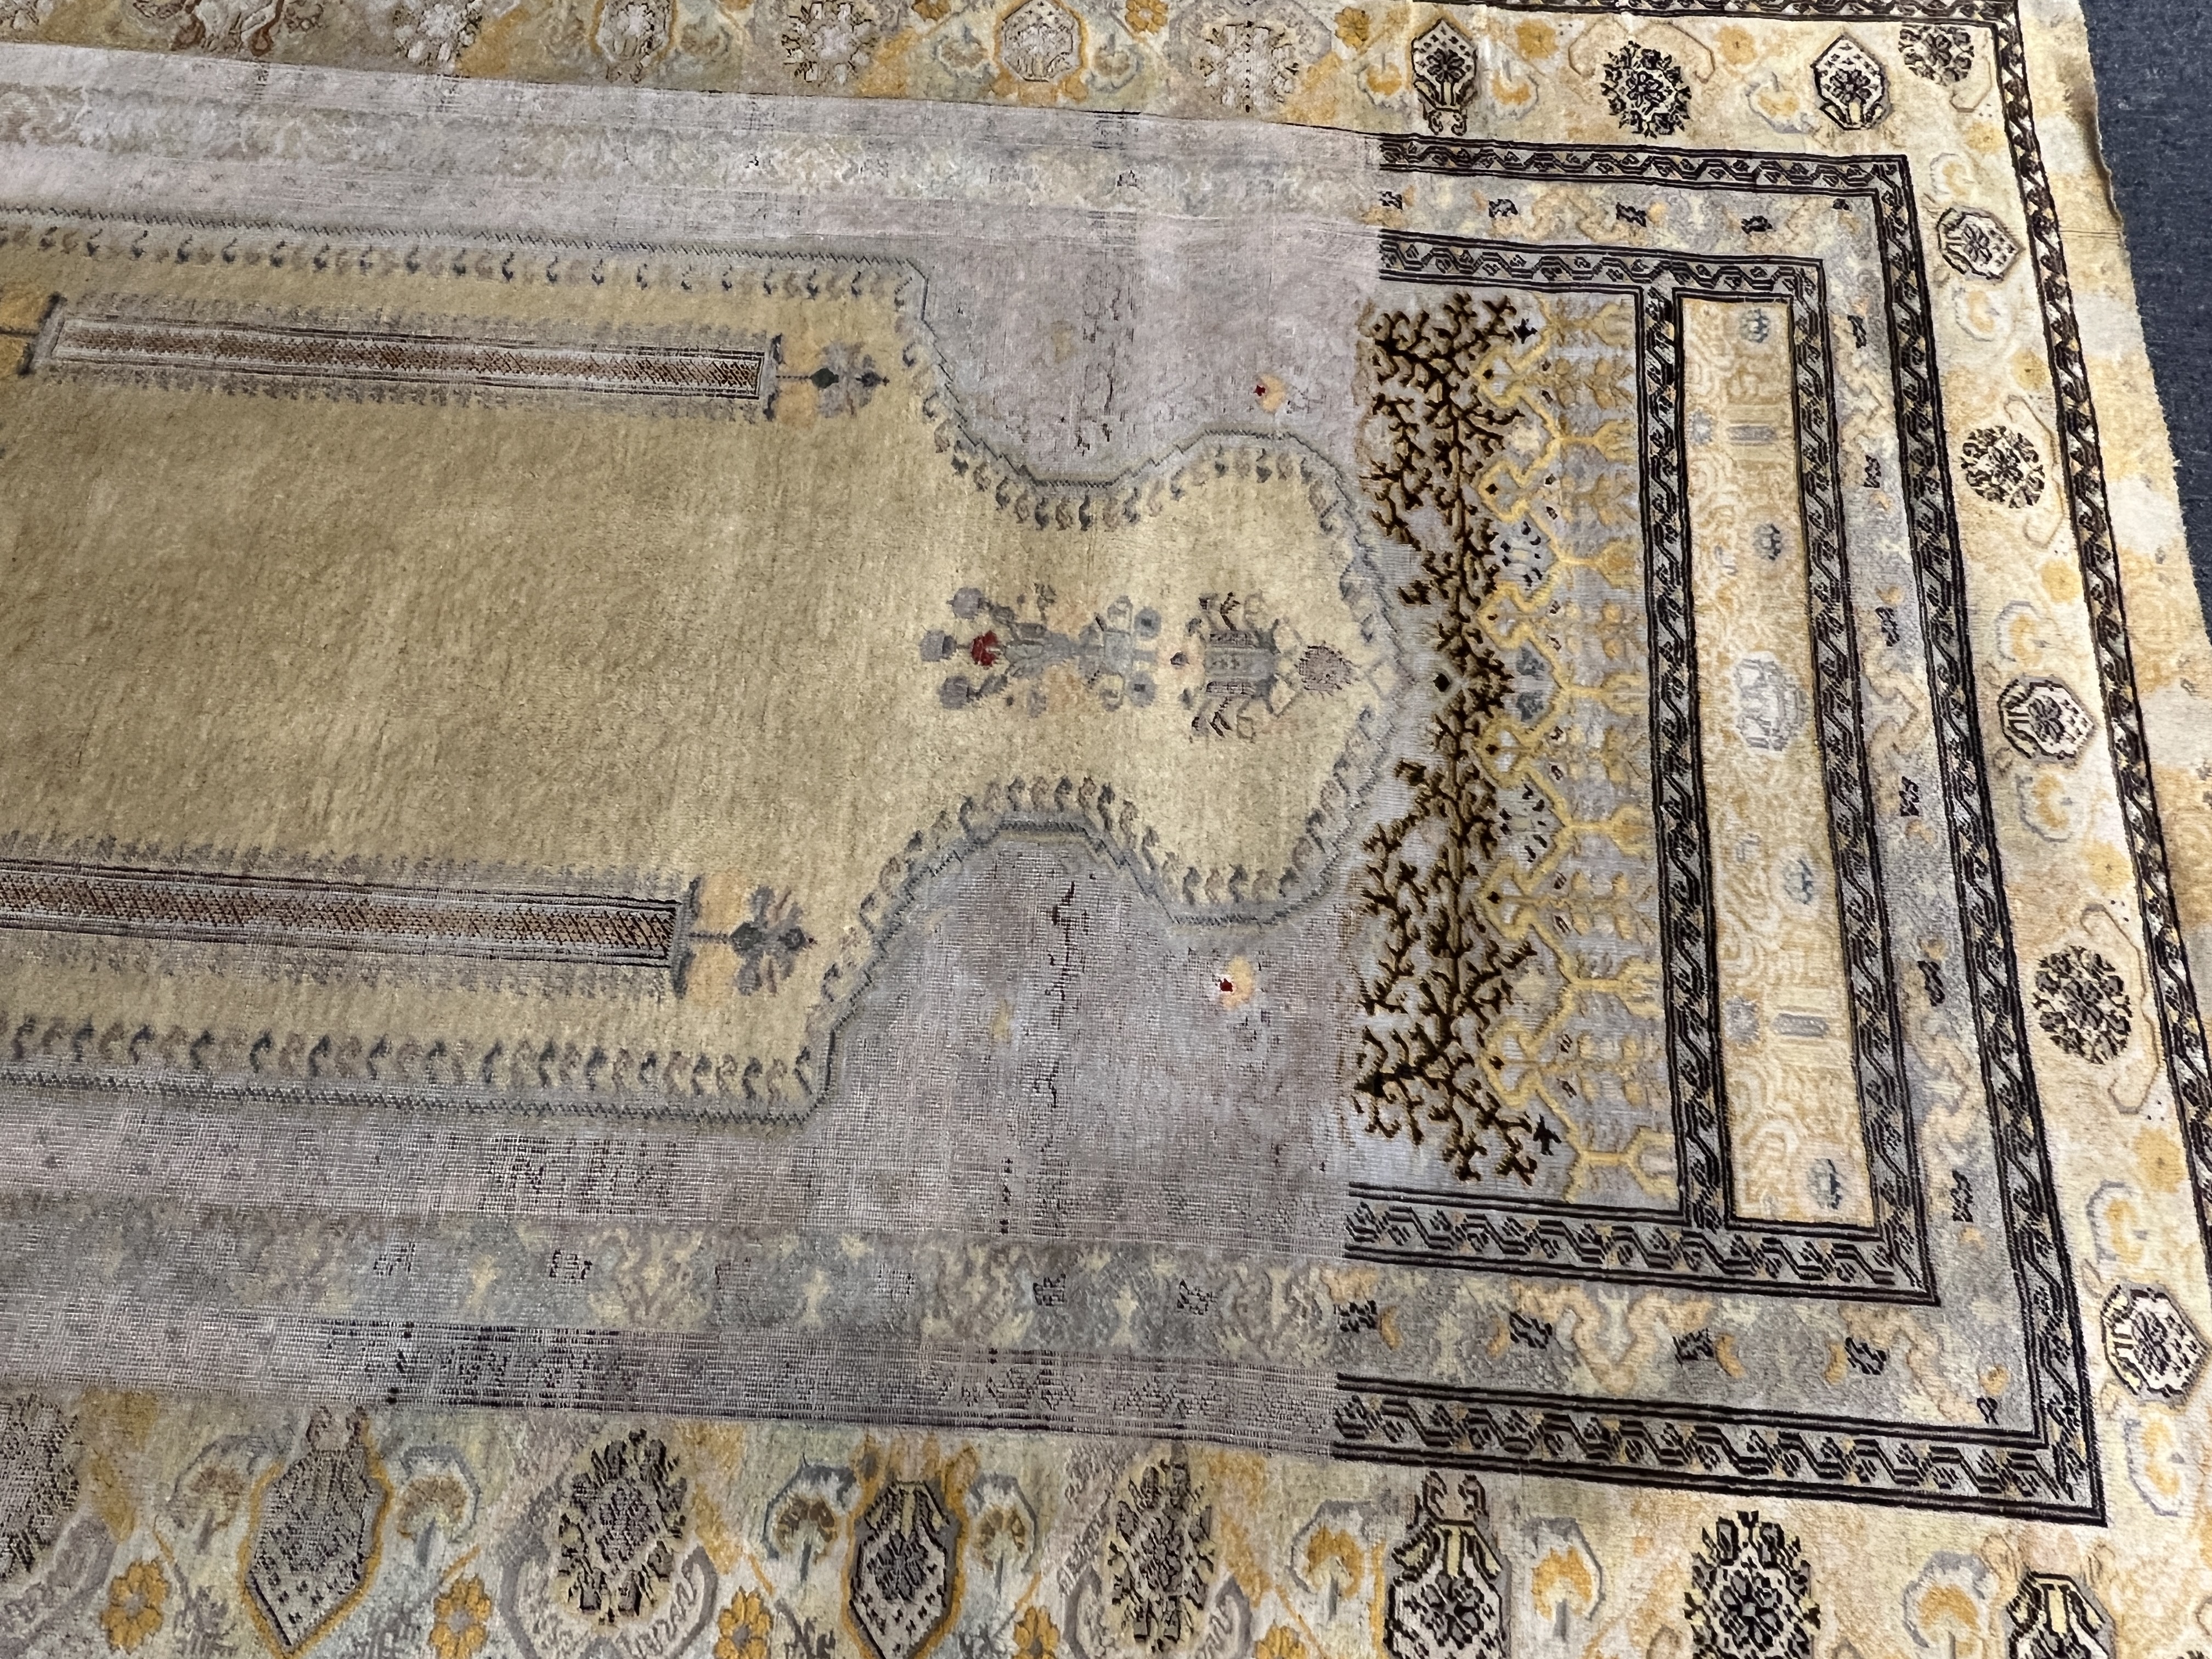 A Turkish silk prayer rug, 185 x 137cm